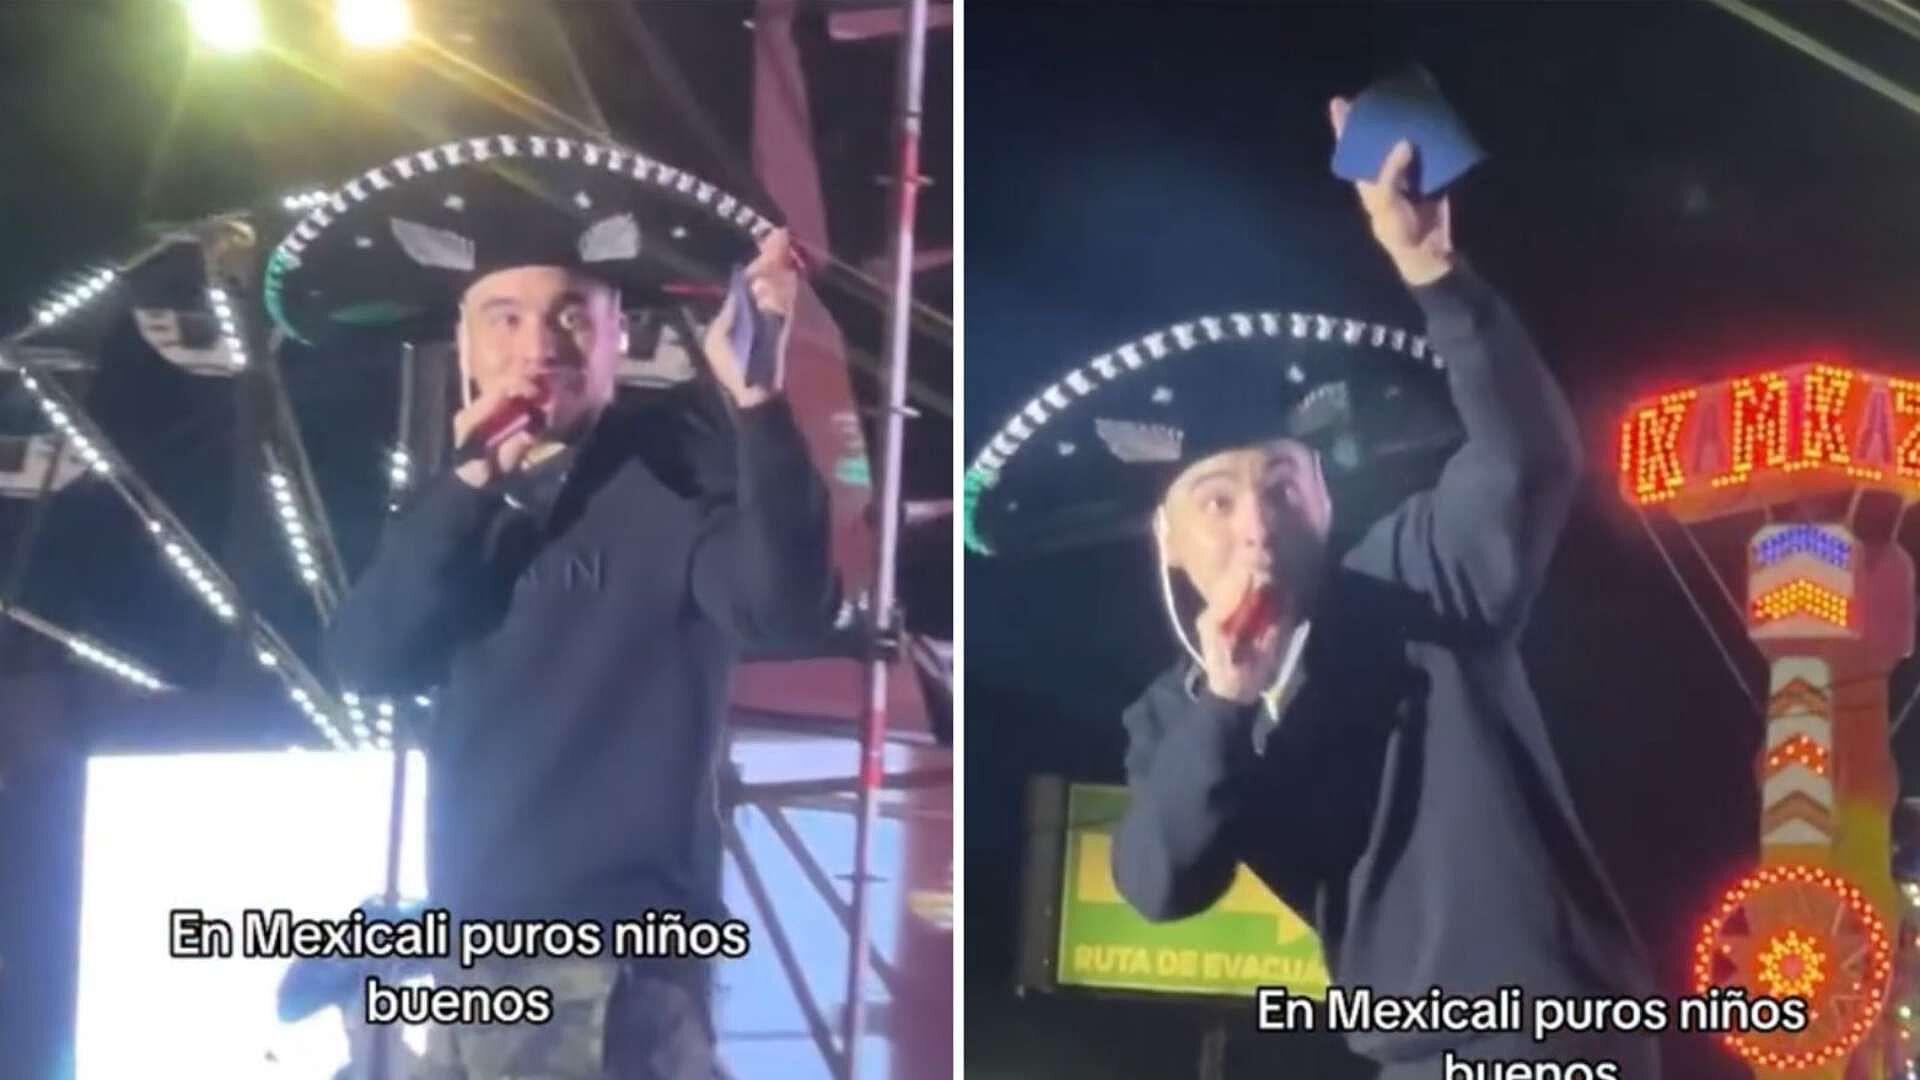 Le Arrojan Biblias a MC Davo Durante su Concierto en Mexicali